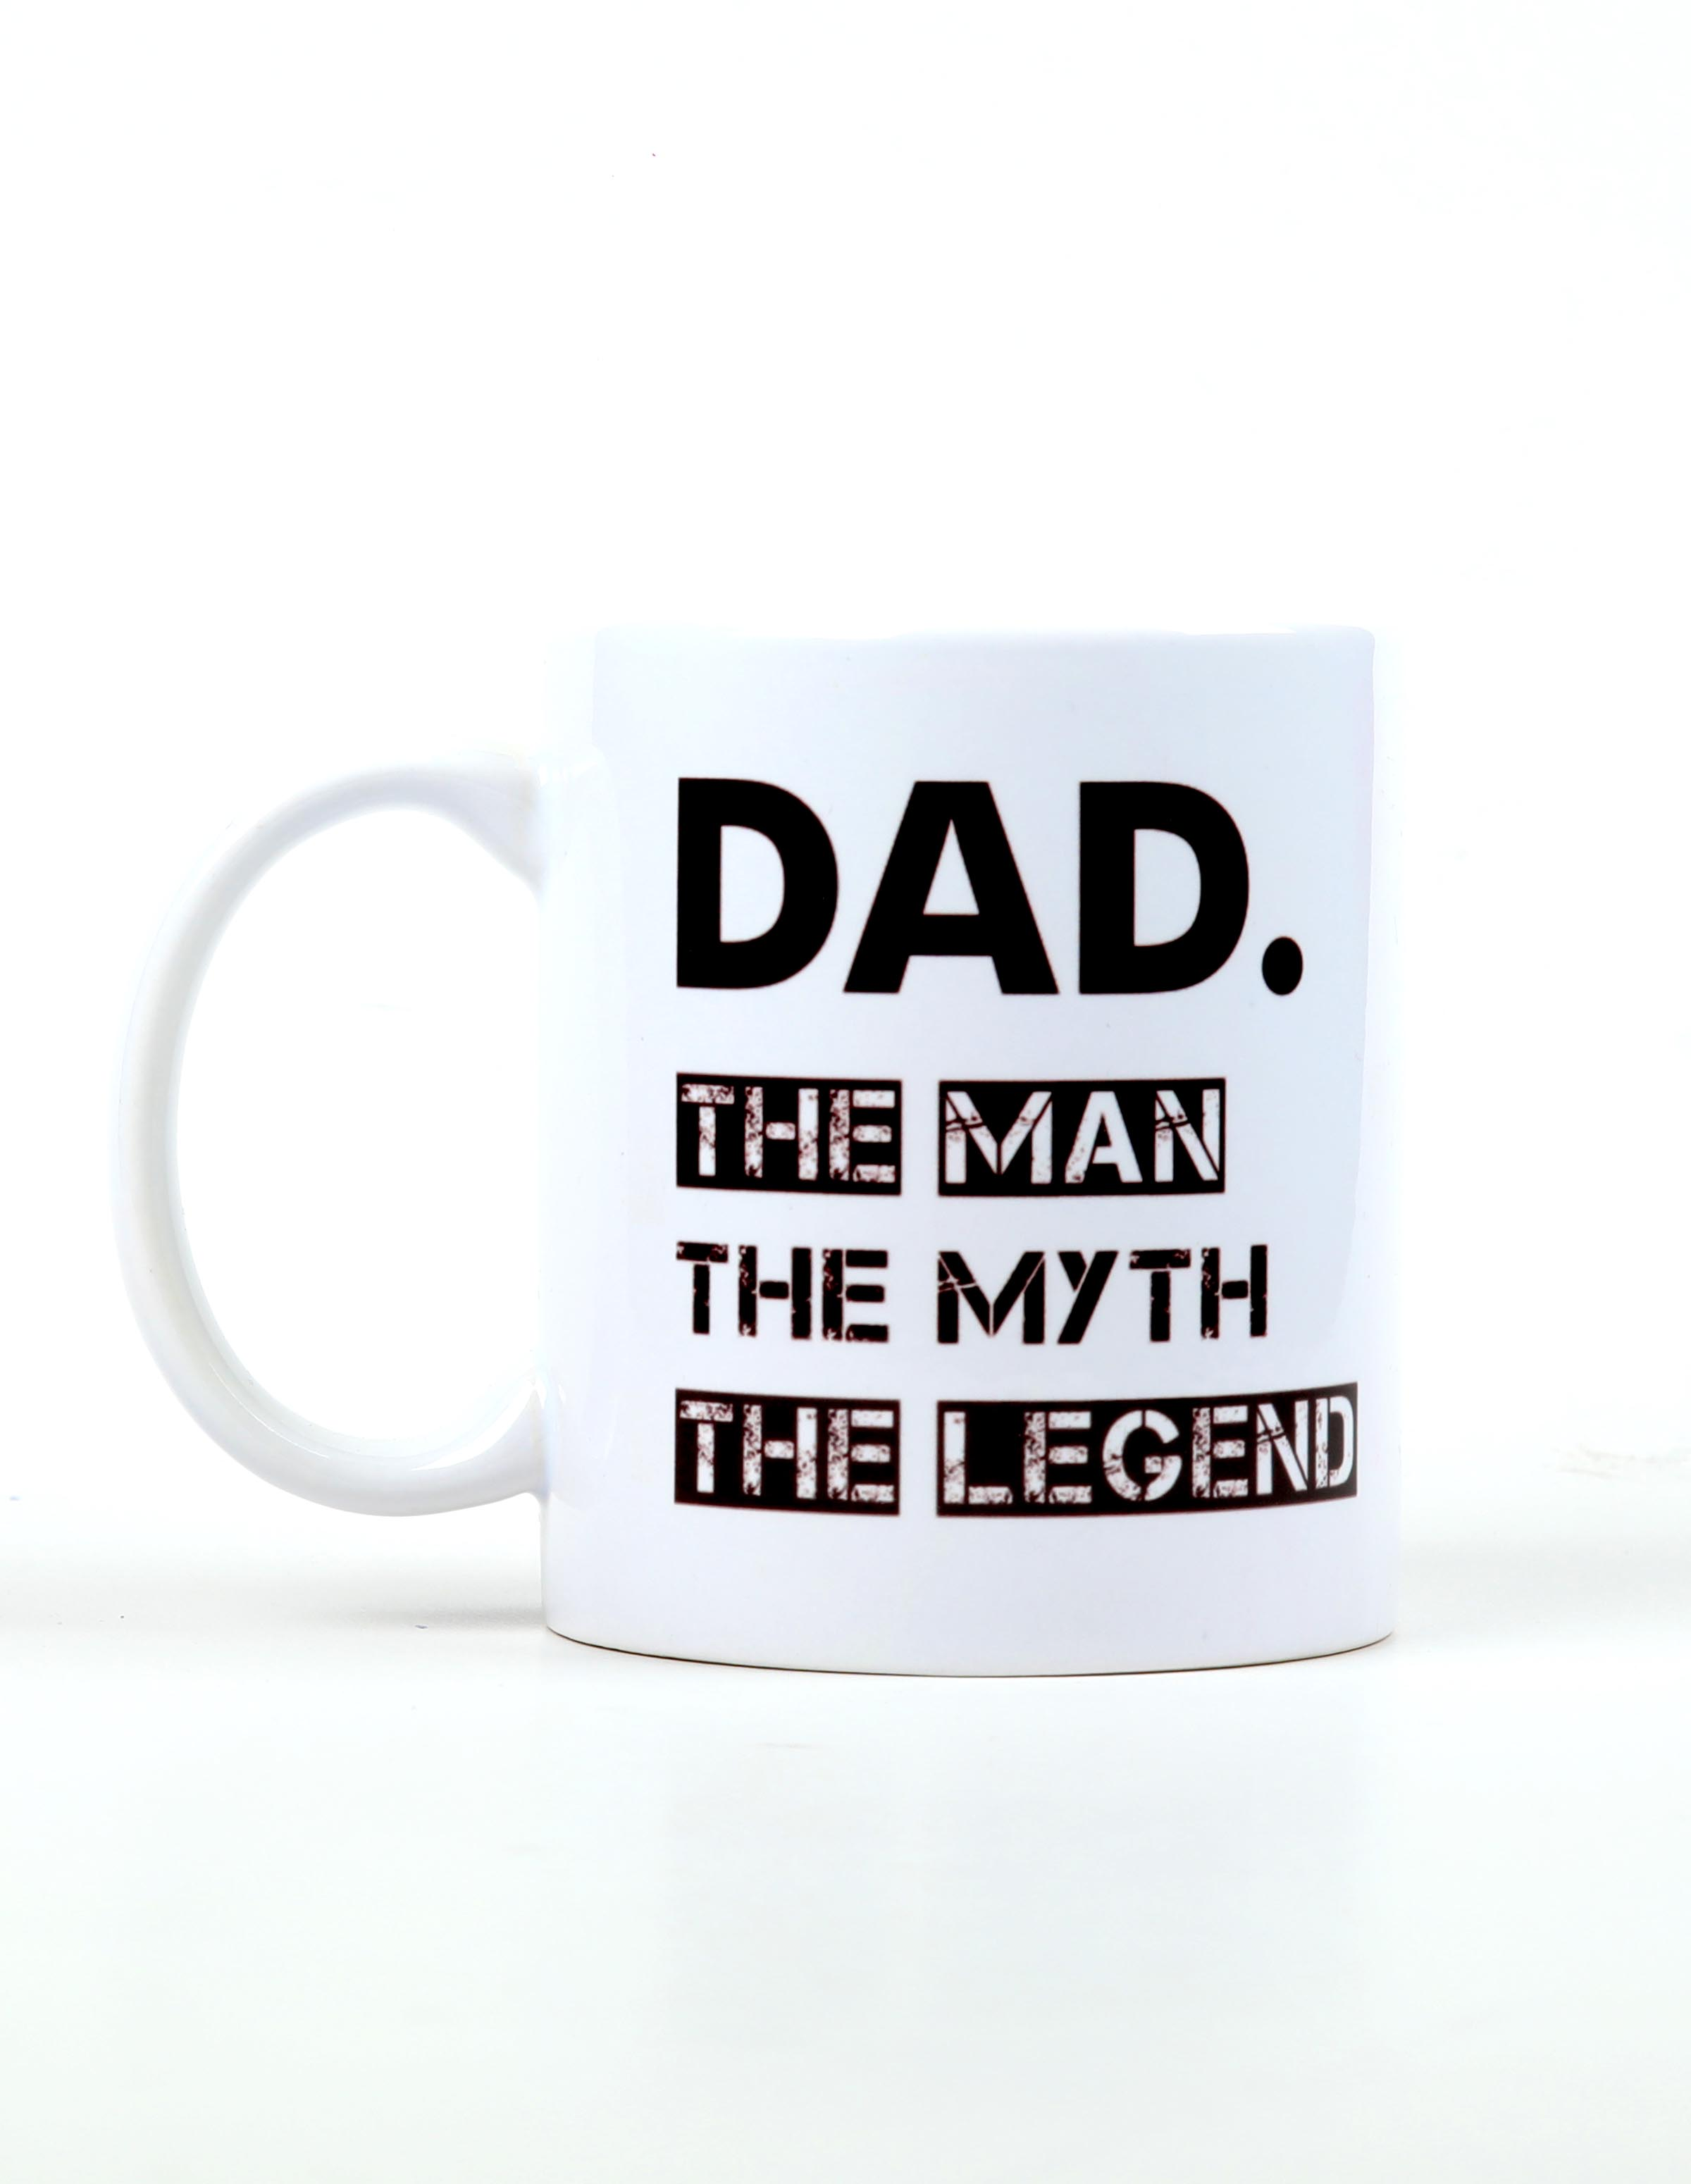 The Legend - Mug